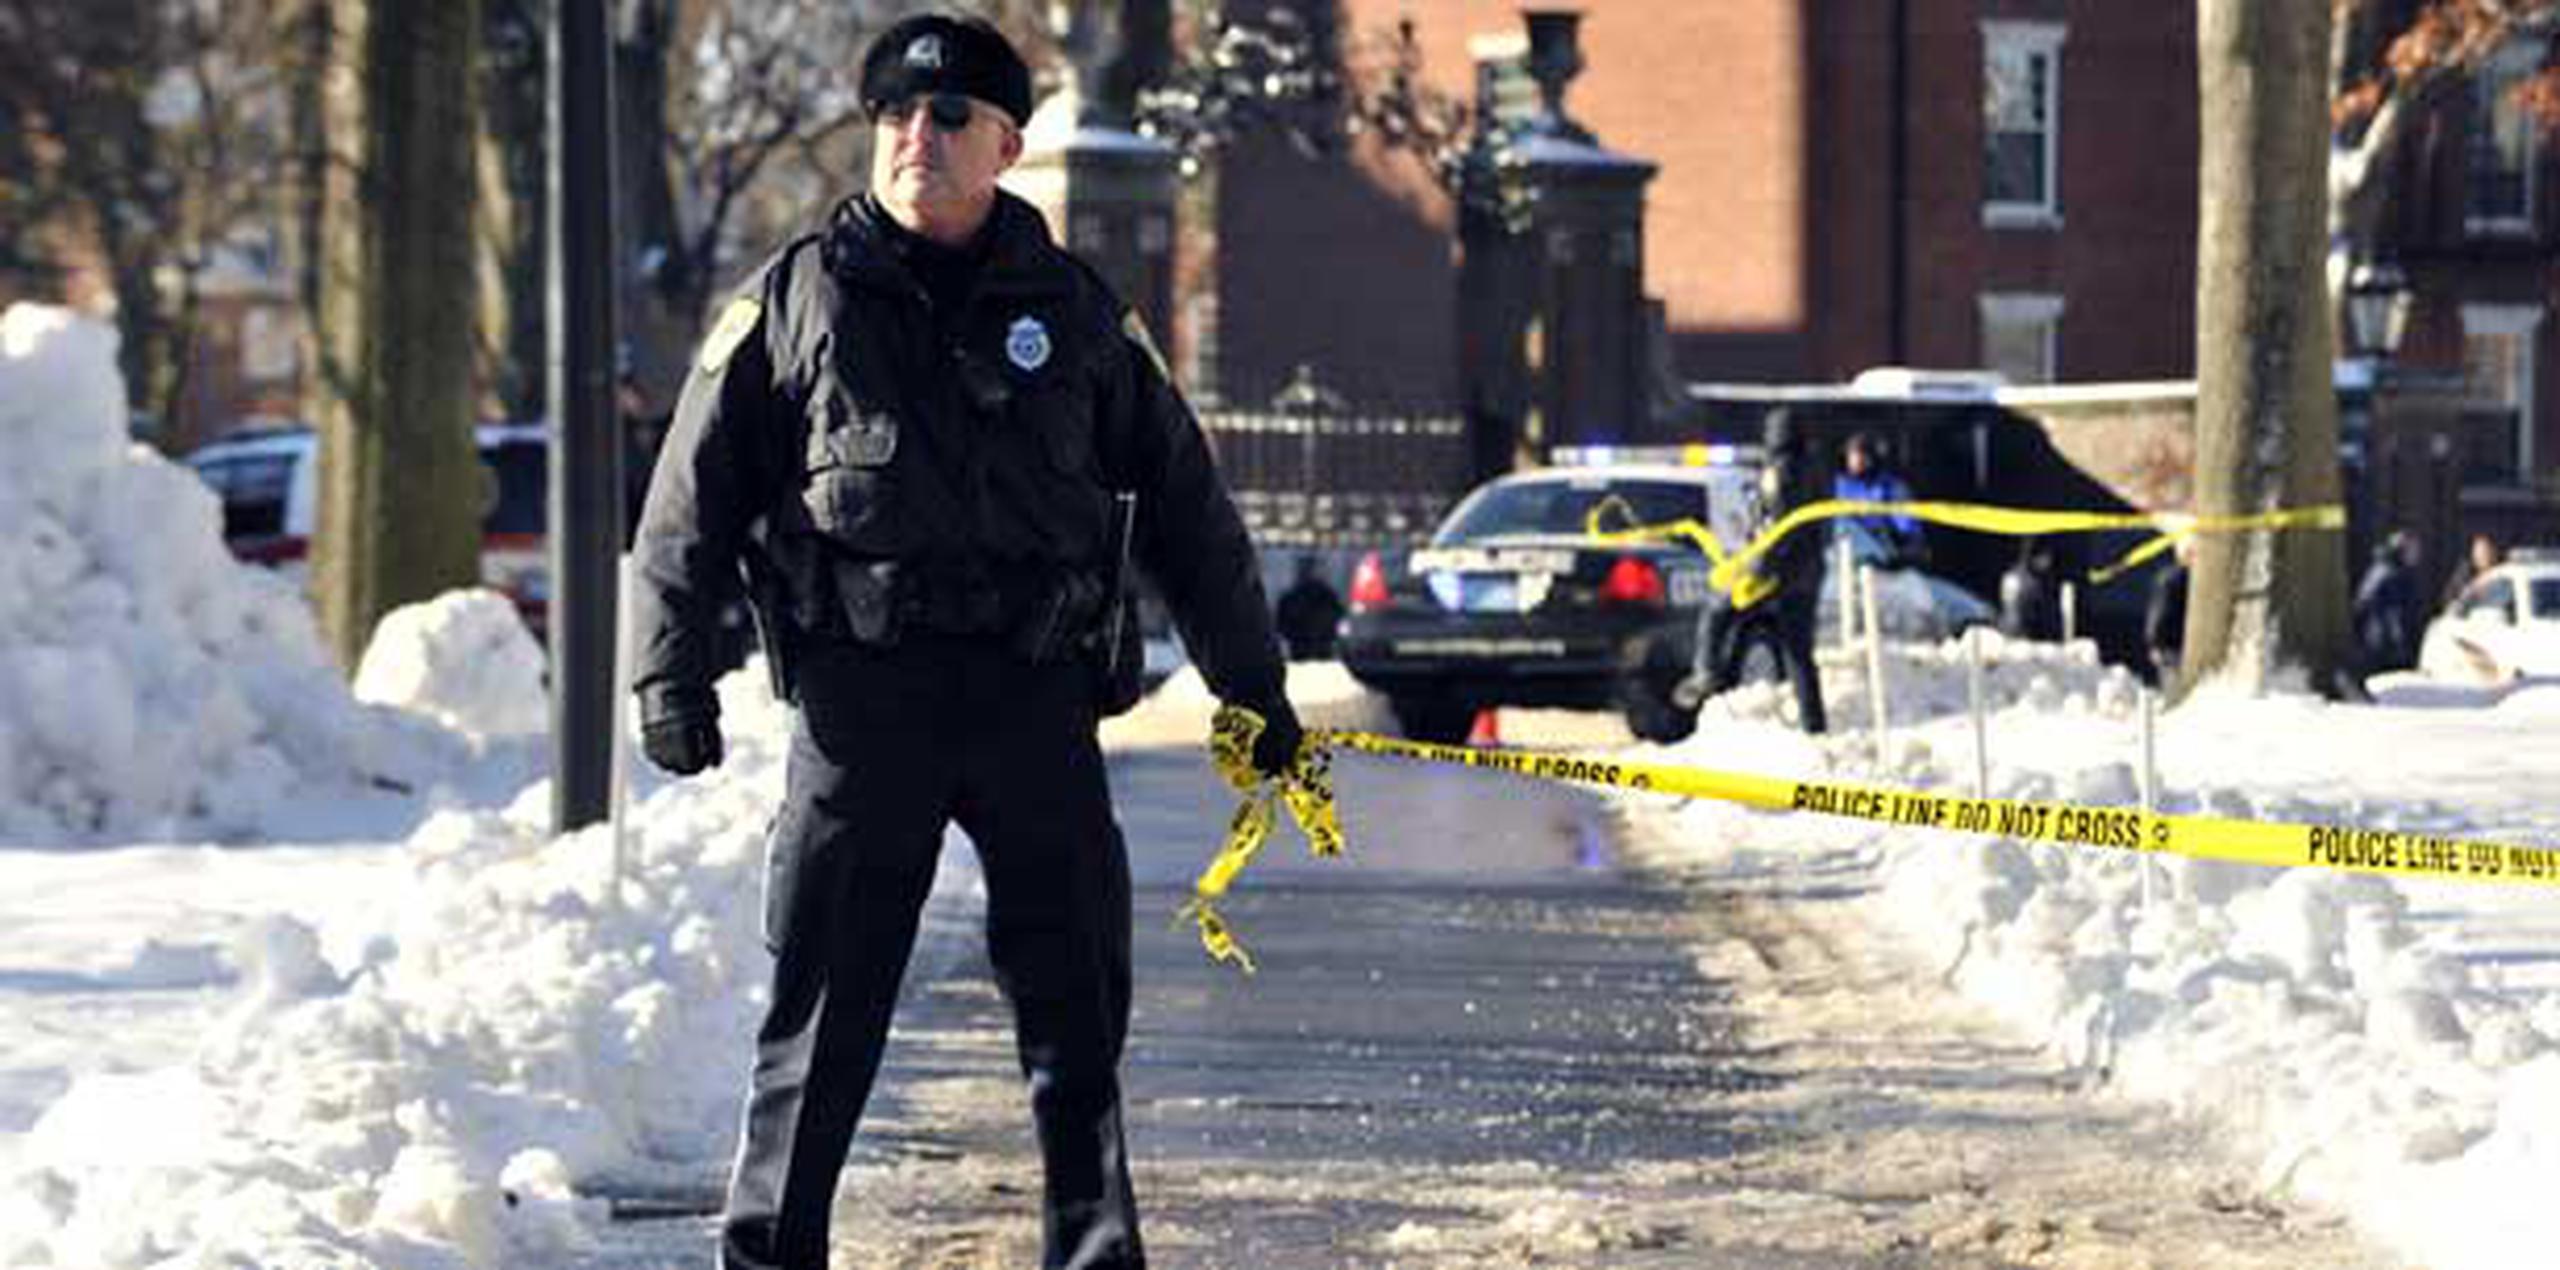 La Universidad de Harvard ordenó desalojar cuatro edificios de su campus y alertó a la Policía por tener informaciones "no confirmadas" sobre la existencia de explosivos. (AP/Josh Reynolds)